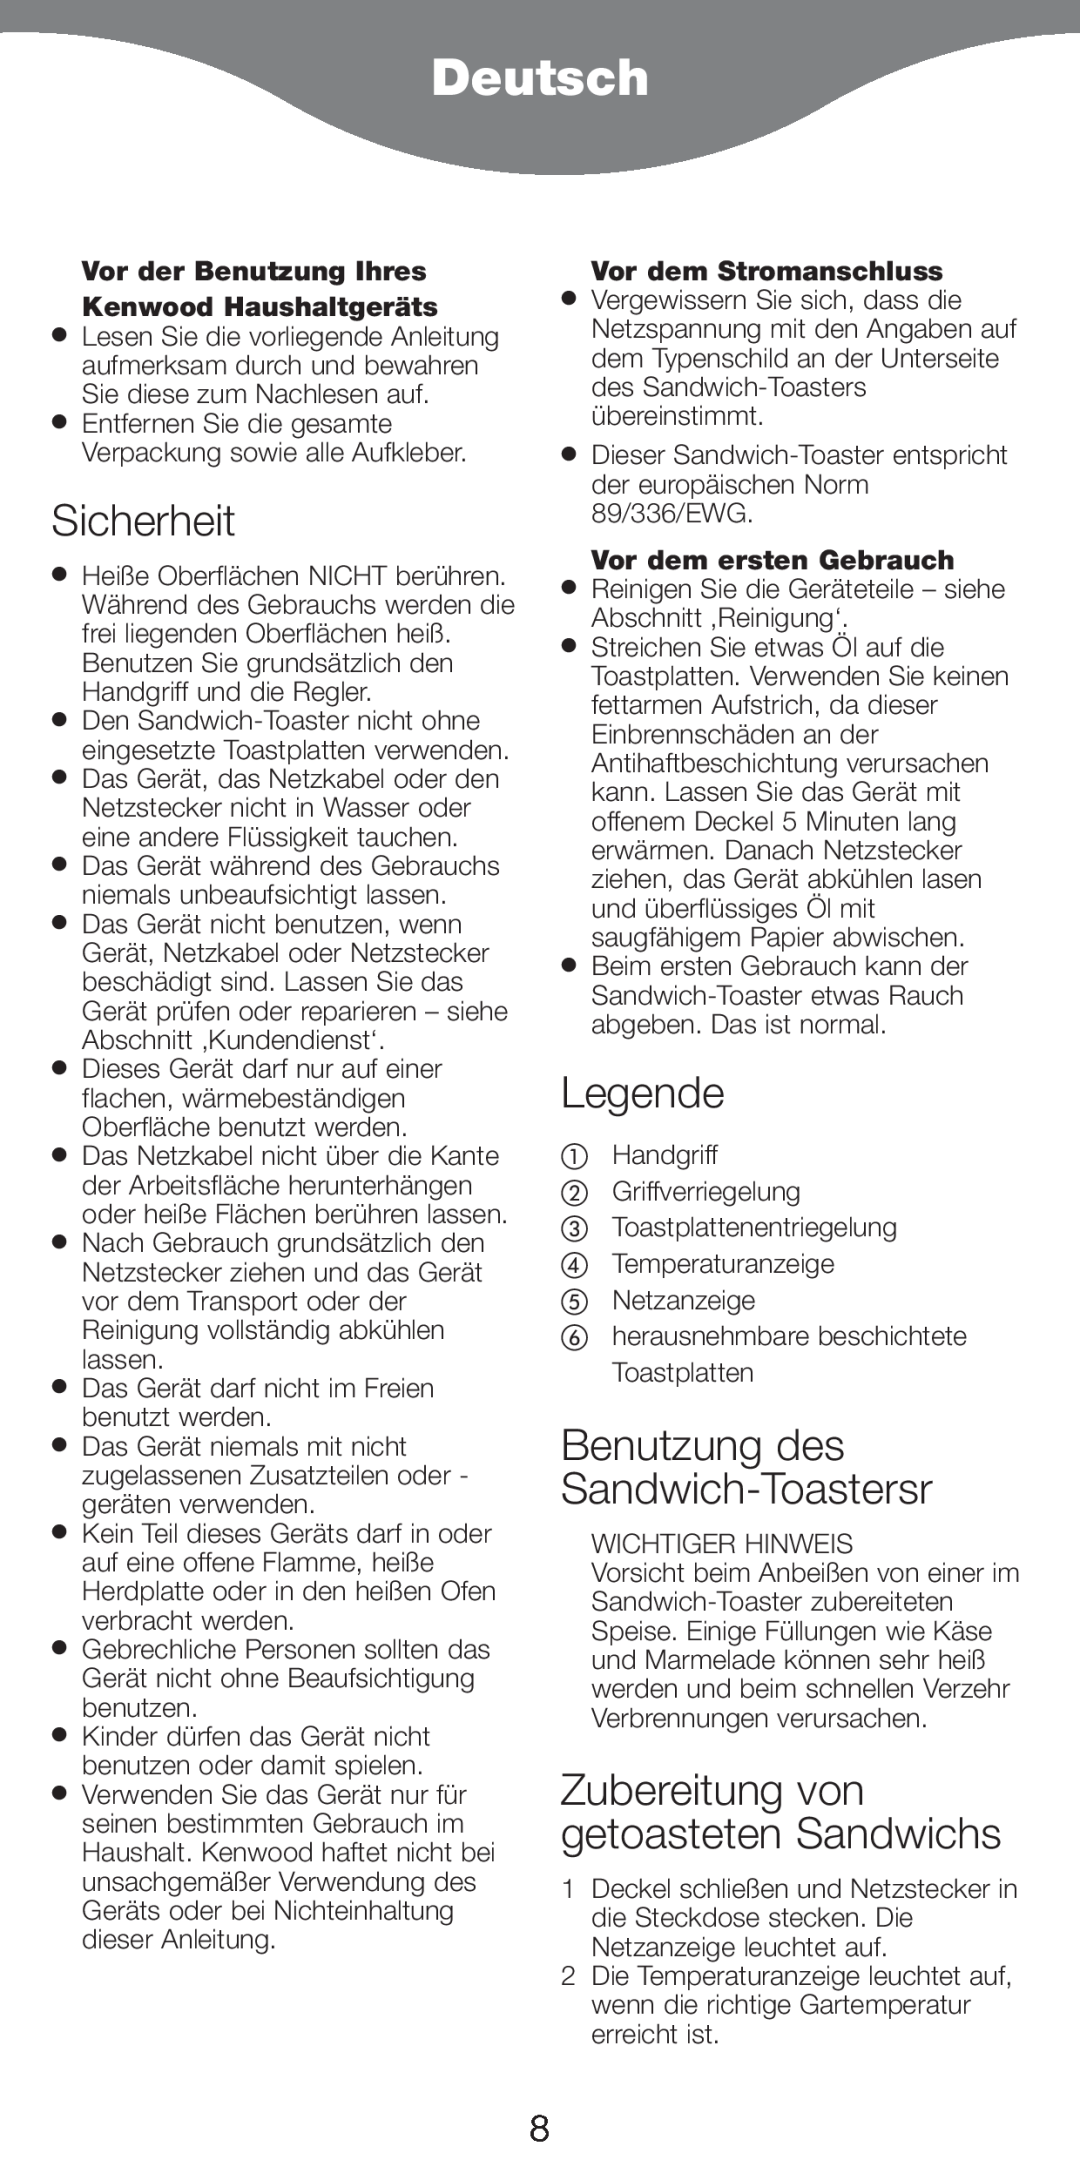 Kenwood SM420 manual Deutsch, Sicherheit, Legende, Benutzung des Sandwich-Toastersr, Zubereitung von getoasteten Sandwichs 